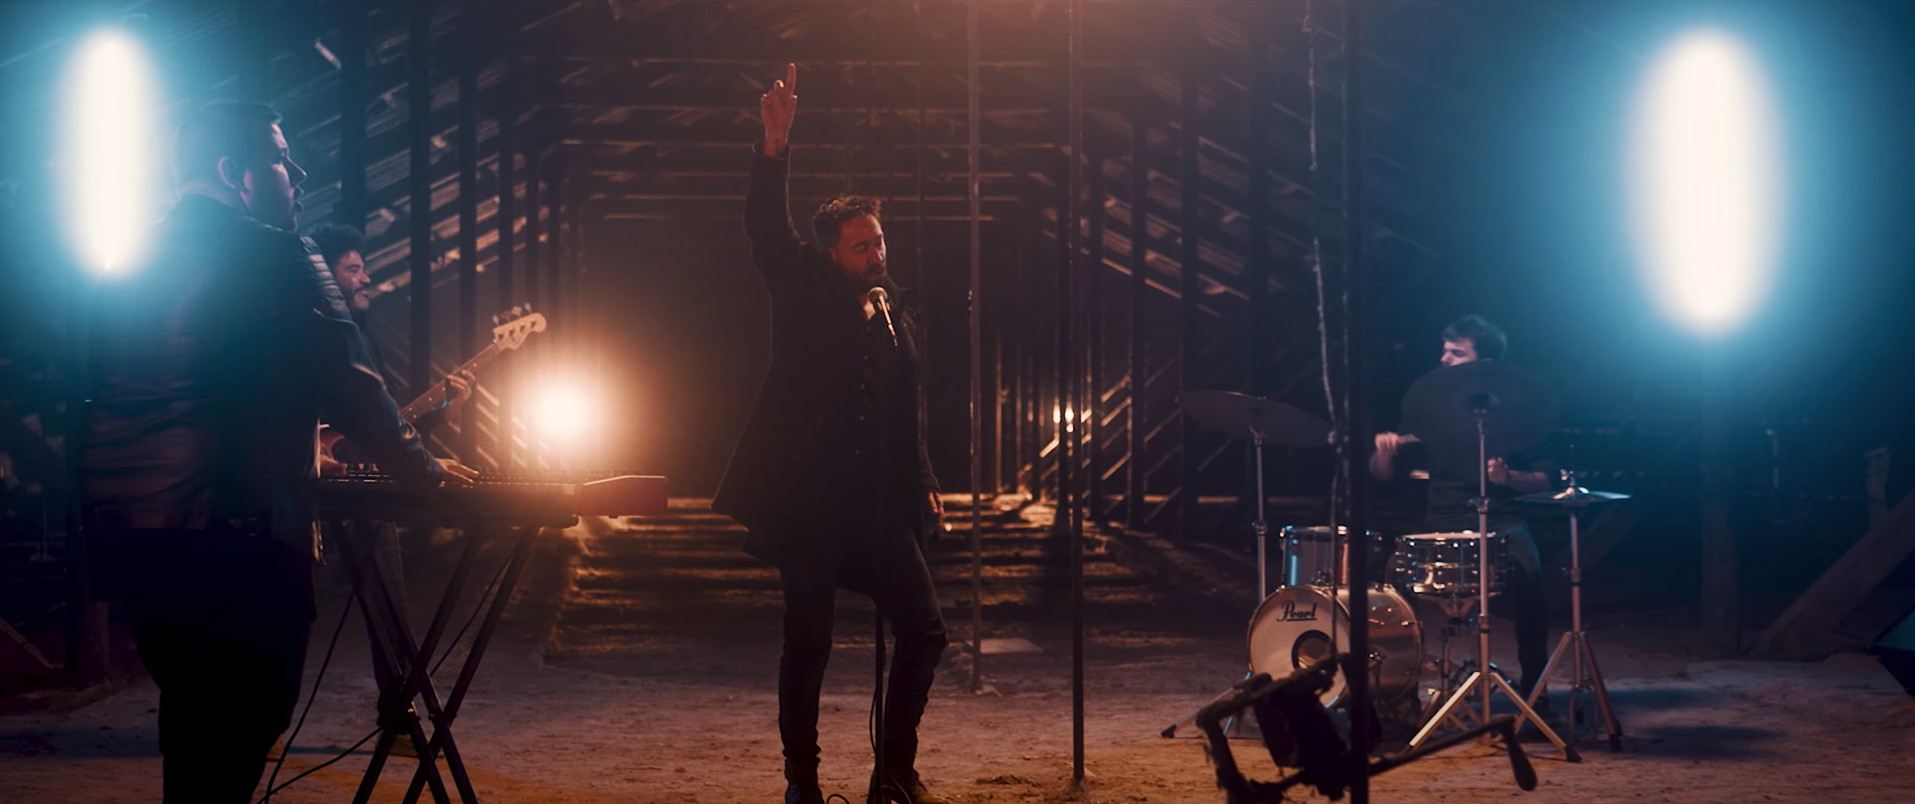 Marc Timón en el videoclip de la canción 'Perfums de nit', de su álbum pop 'Amalia' / MARC TIMÓN